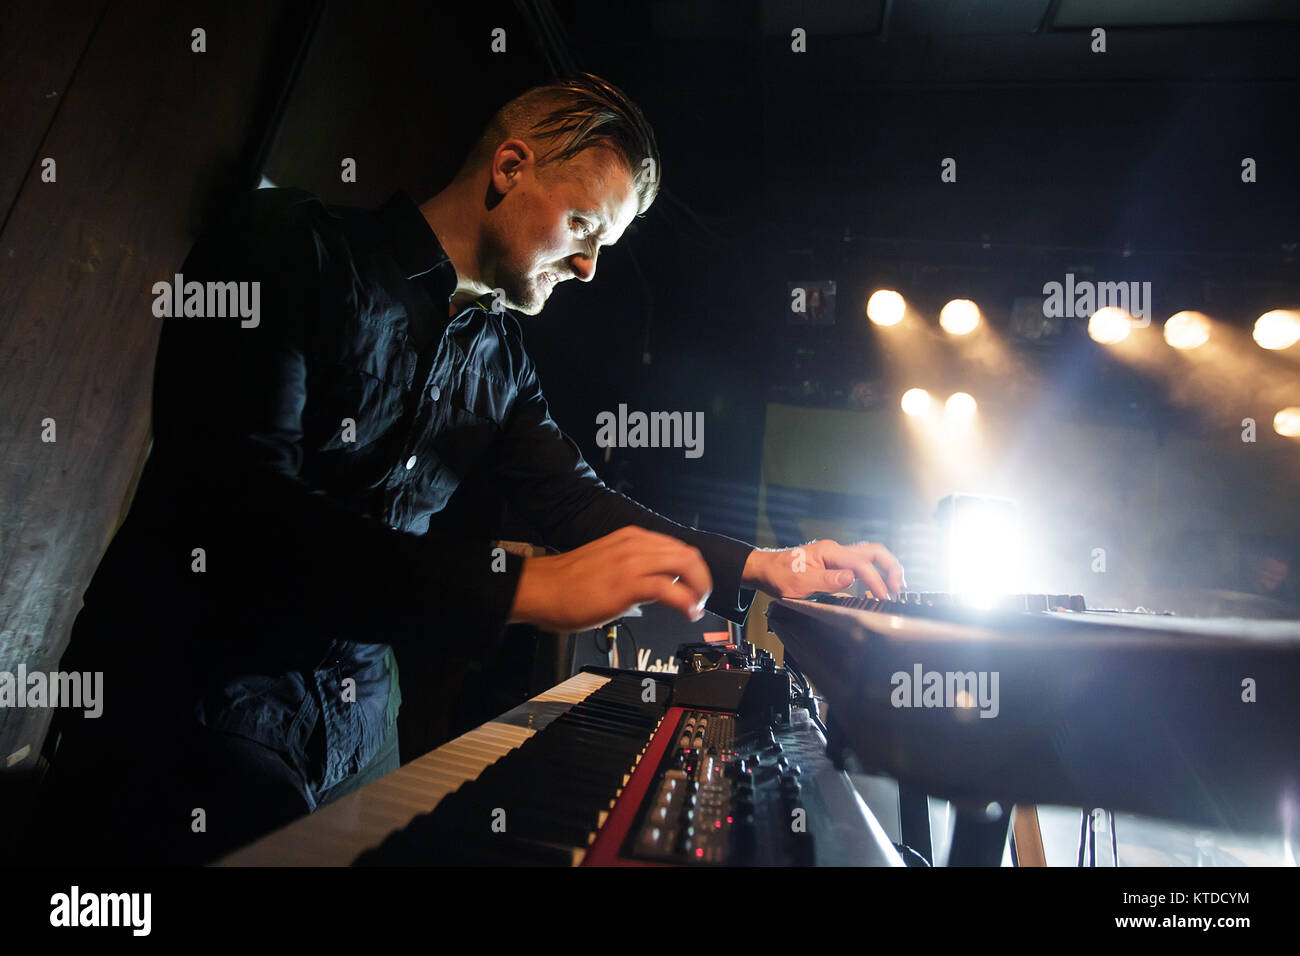 La musique d'avant-garde norvégien Shining groupe effectue un concert live à Vega à Copenhague. Eirik Knutsen Tovsrud musicien ici sur clavier est vu sur scène. Le Danemark, 29/10 2015. Banque D'Images